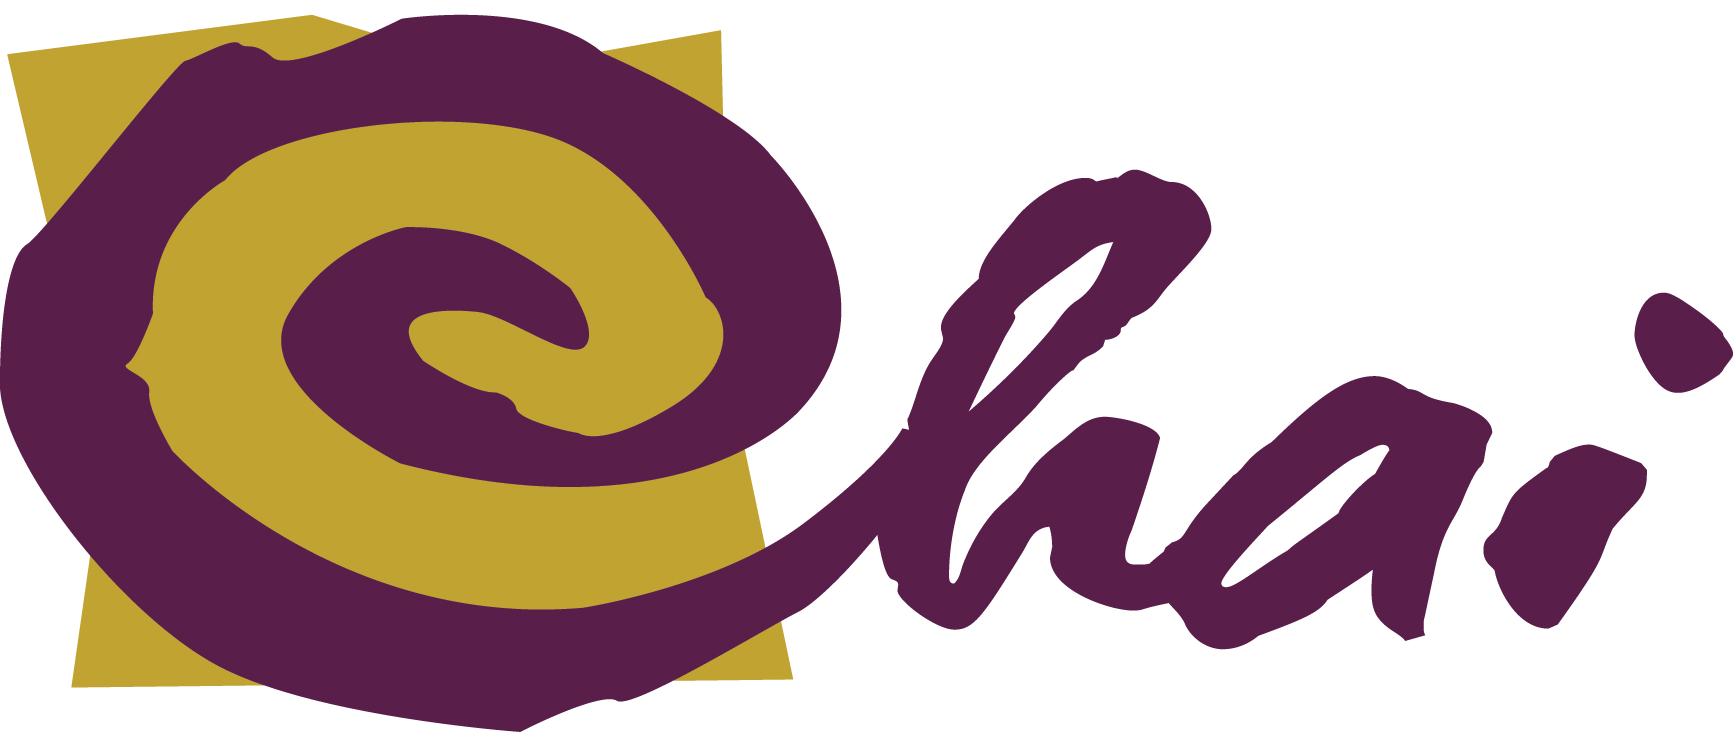 Chai Logo